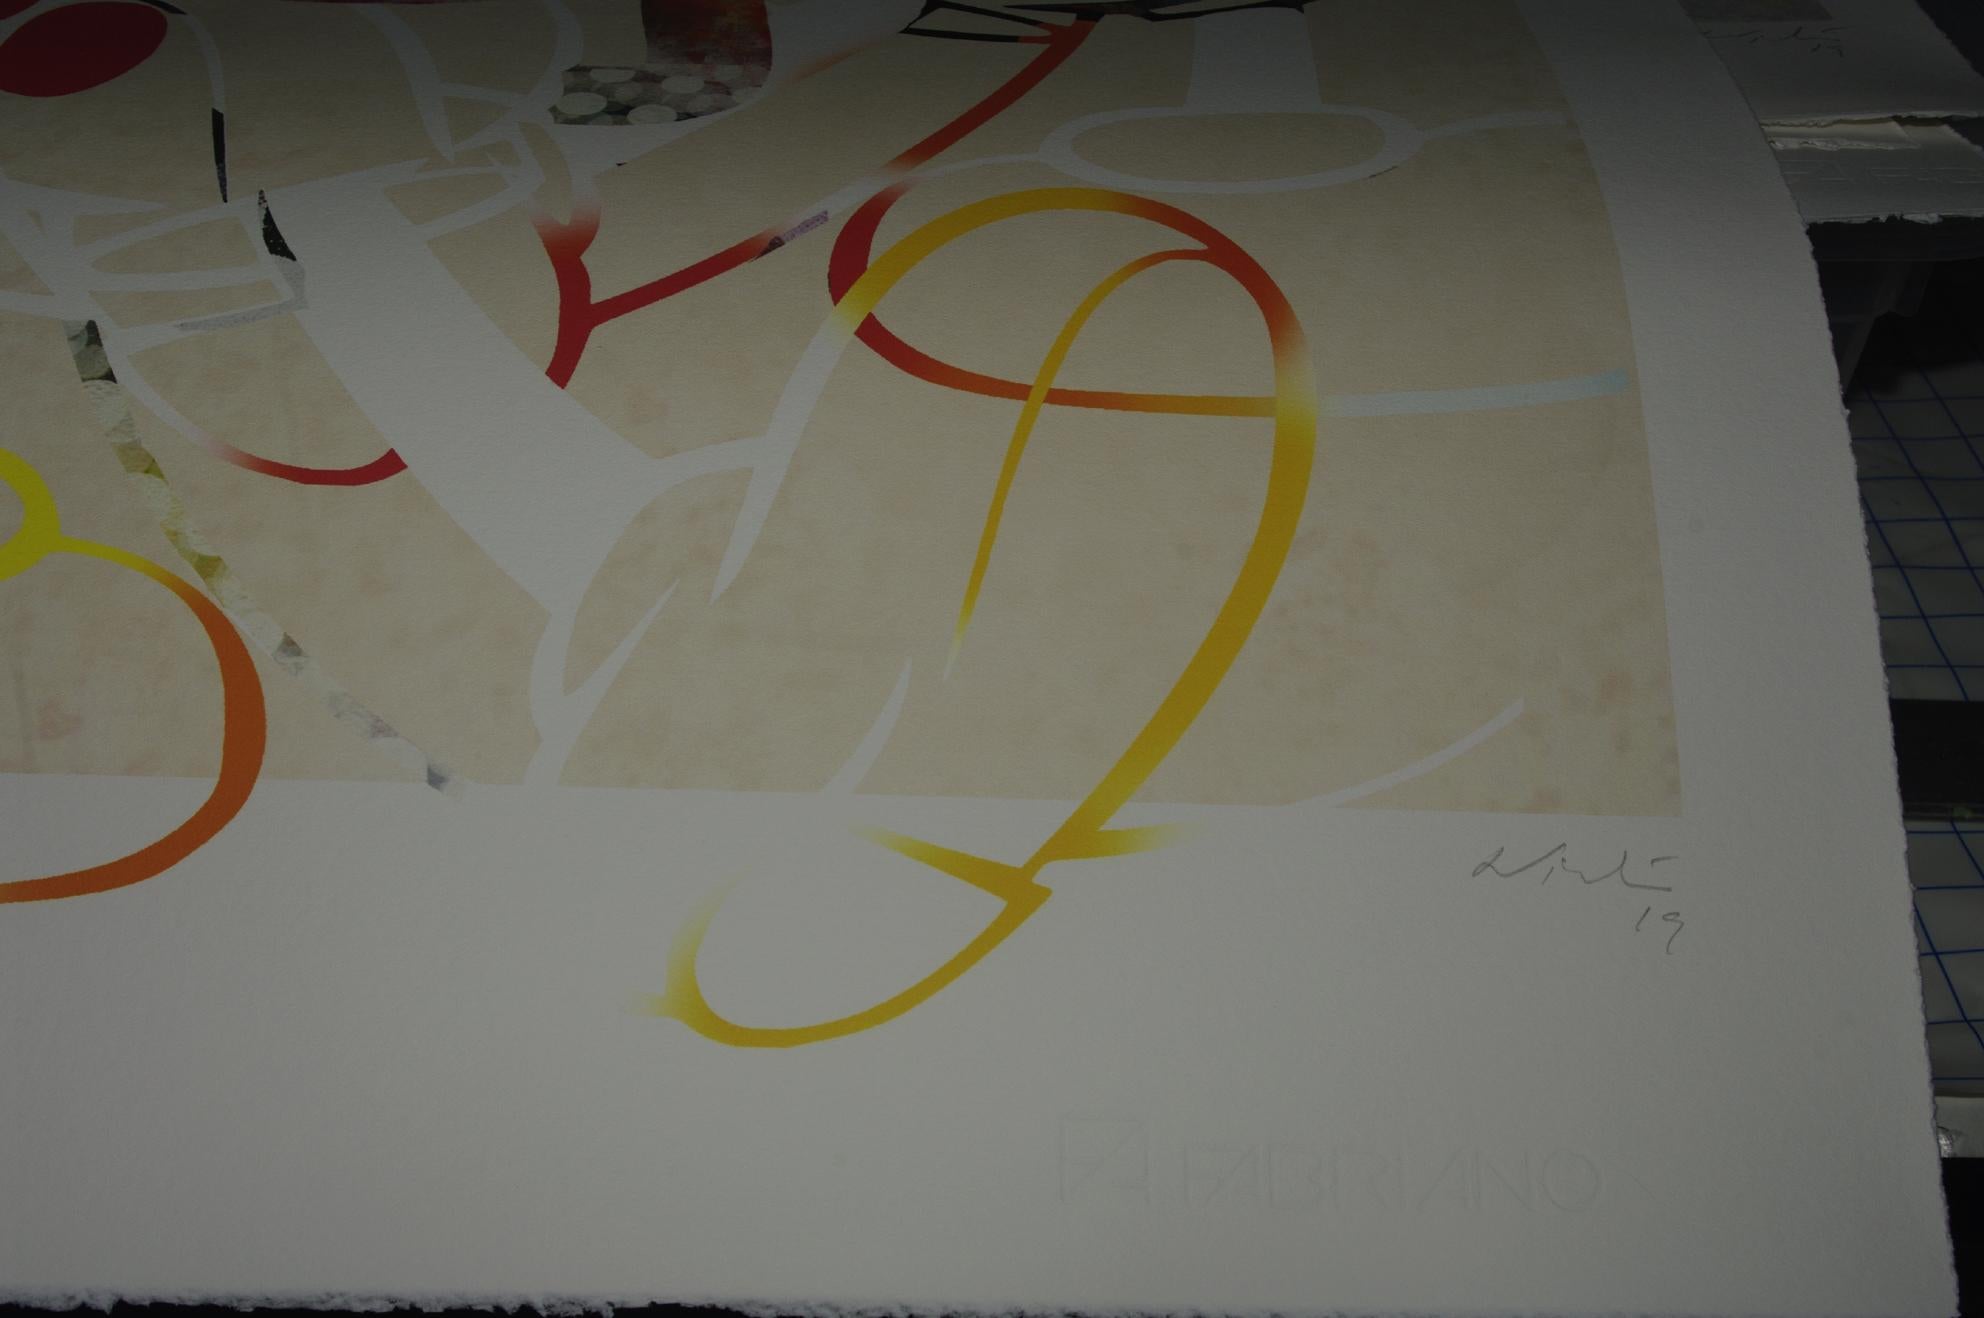 Mein Freund Freund

Digitaler Pigmentdruck mit Ultrachrome-Tinte auf Fabriano Rosaspina-Papier. Vom Künstler handsigniert, mit Echtheitszertifikat, (ungerahmt)

Seine Werke wurden im Reina Sofía Museum in Madrid, in der Royal Academy of London, im